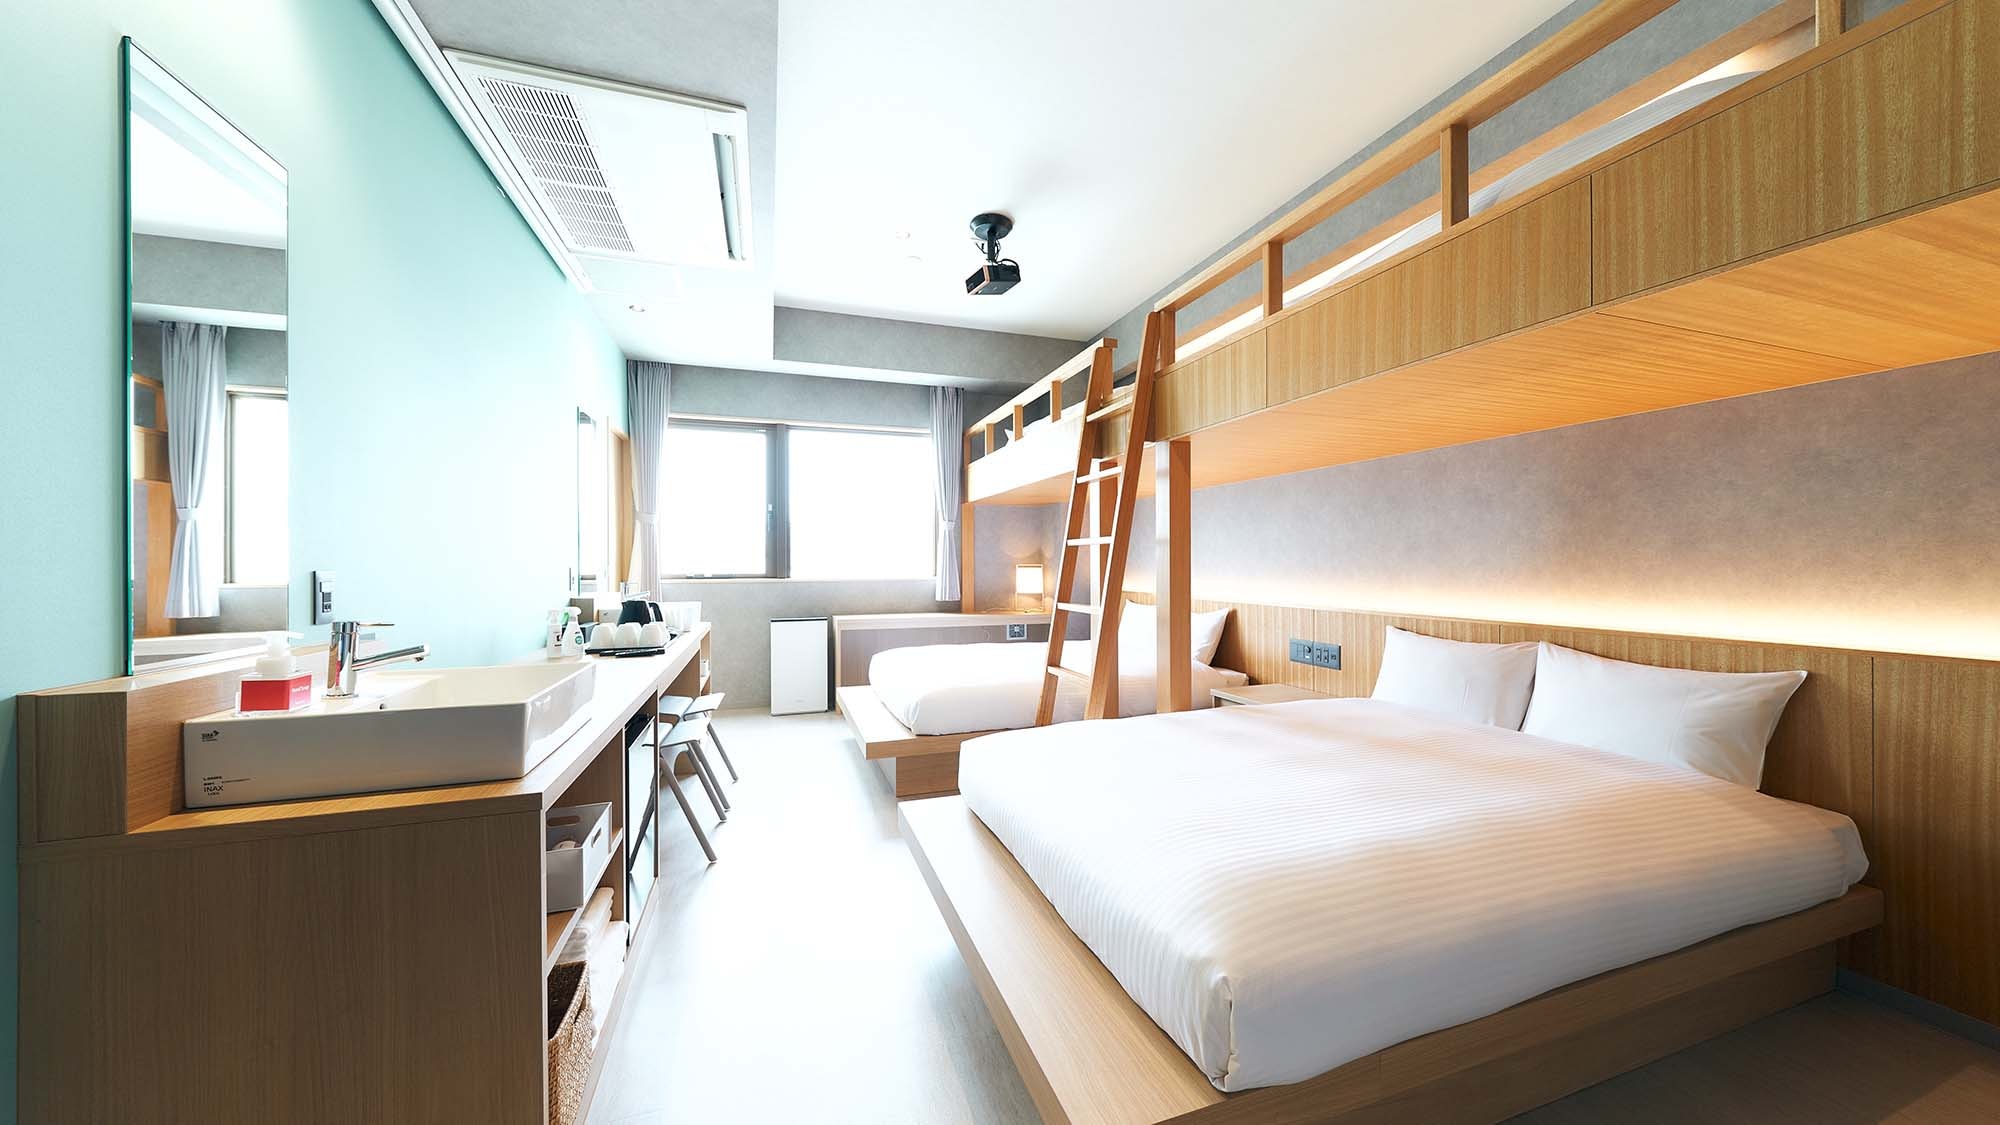 Kamar tempat tidur susun / Kamar dengan nuansa hijau yang menyegarkan adalah desain luas 28 meter persegi!